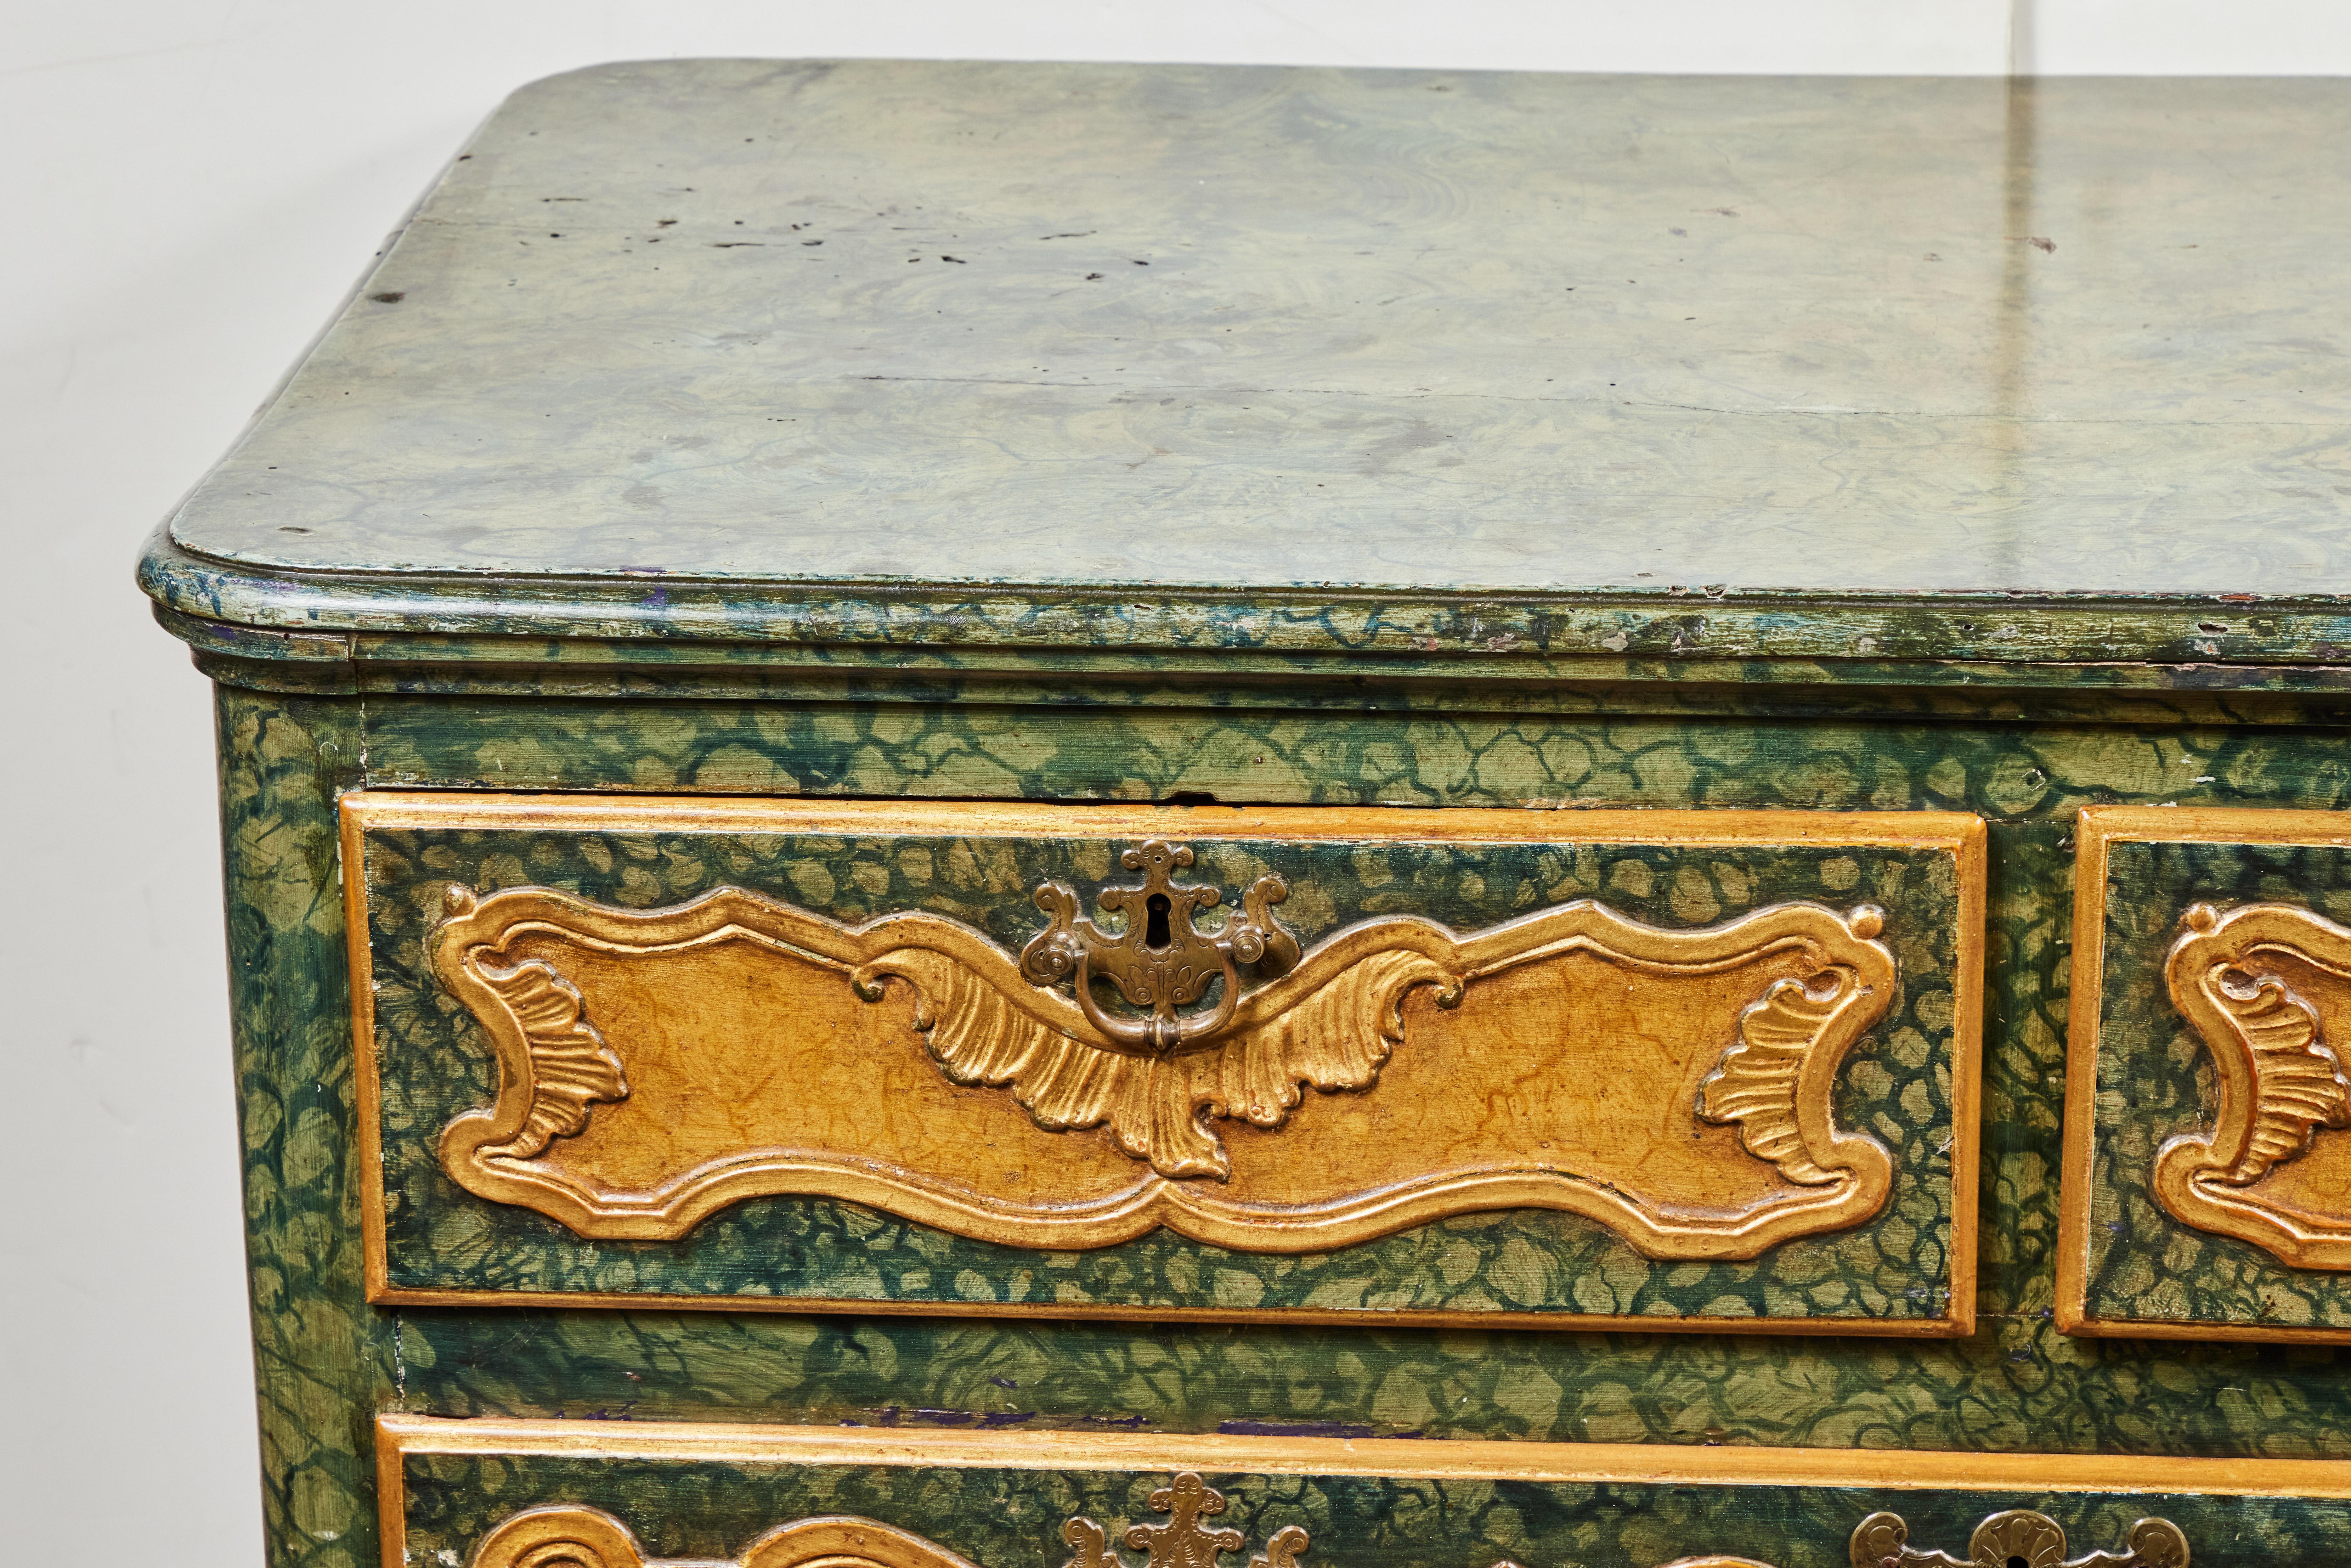 Magnifique commode vénitienne des années 1800, sculptée, peinte et dorée à la feuille, avec trois tiroirs à panneaux sinueux. Le tout en faux verde et marbrure de Sienne et agrémenté de gesso et de dorure à l'or 22k. Le tout surmonté d'un tablier